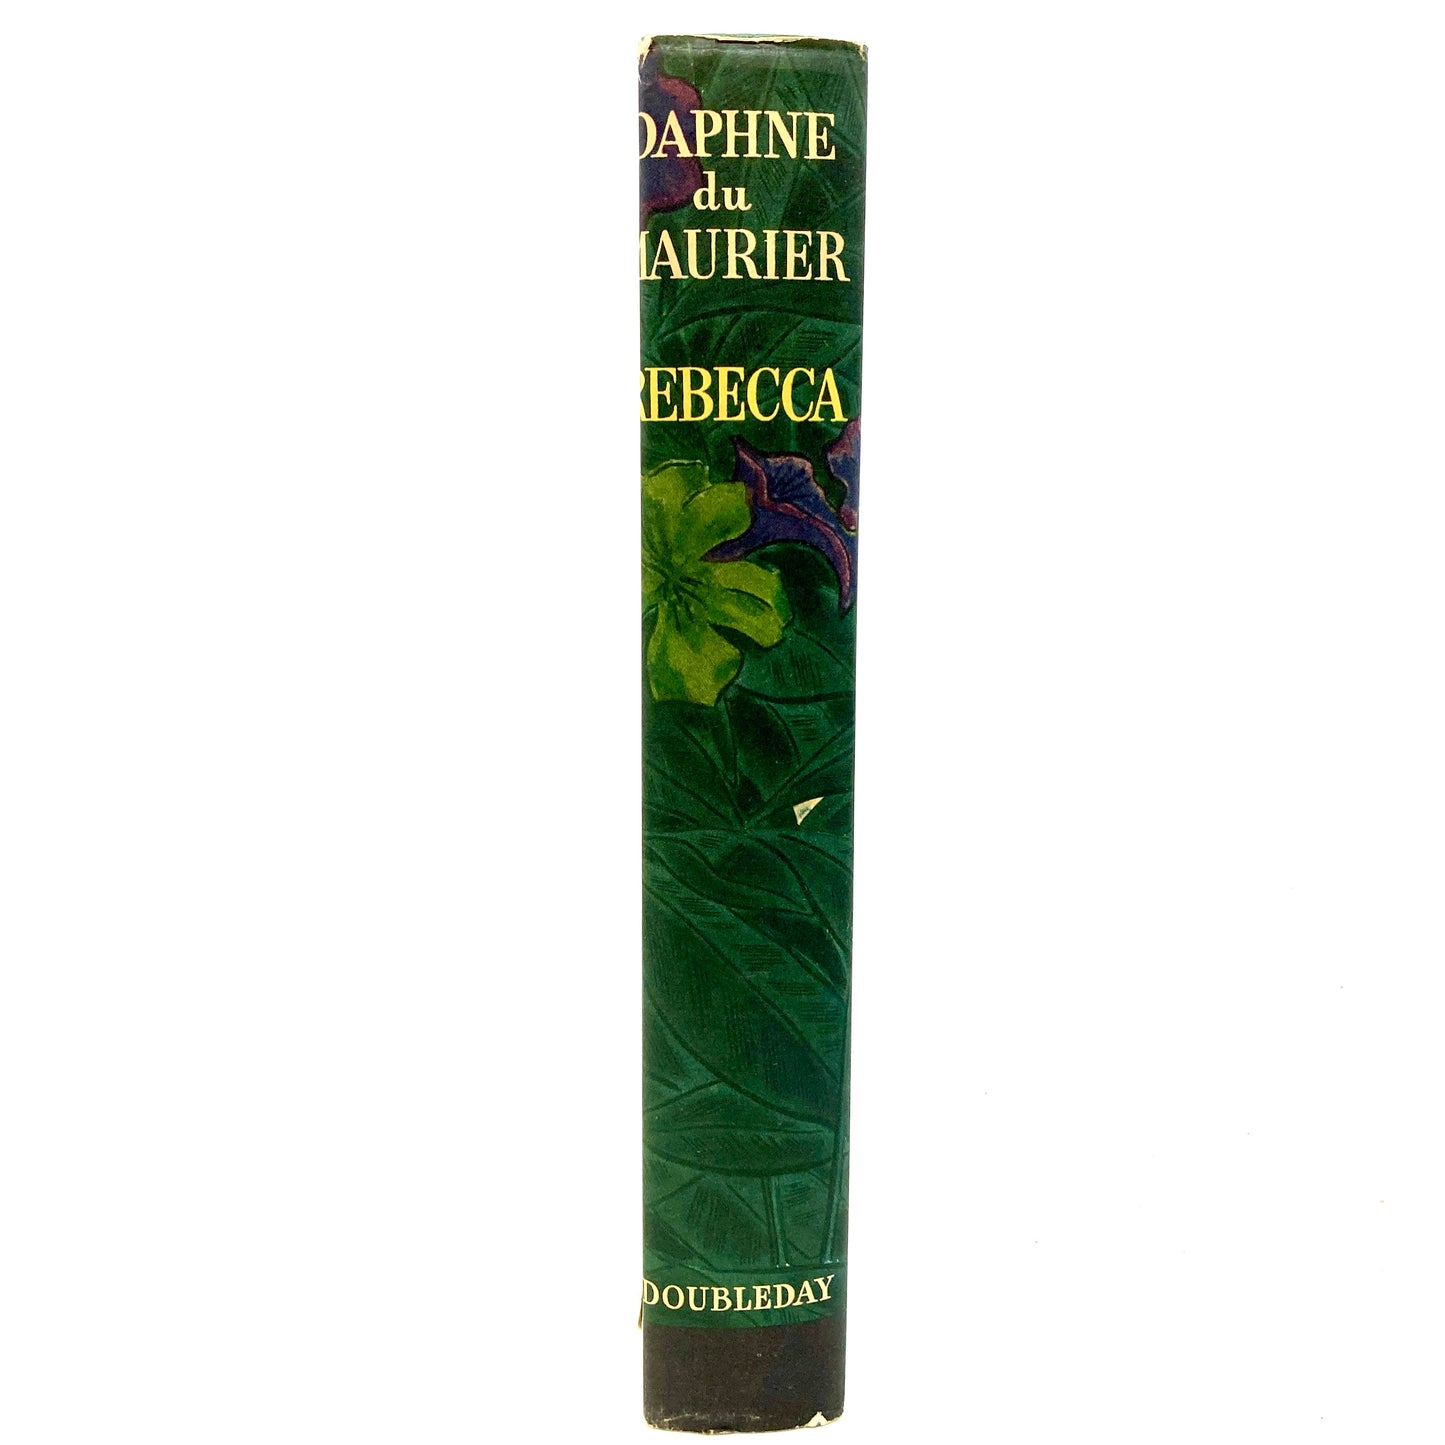 DU MAURIER, Daphne "Rebecca" [Doubleday & Co, 1938] - Buzz Bookstore